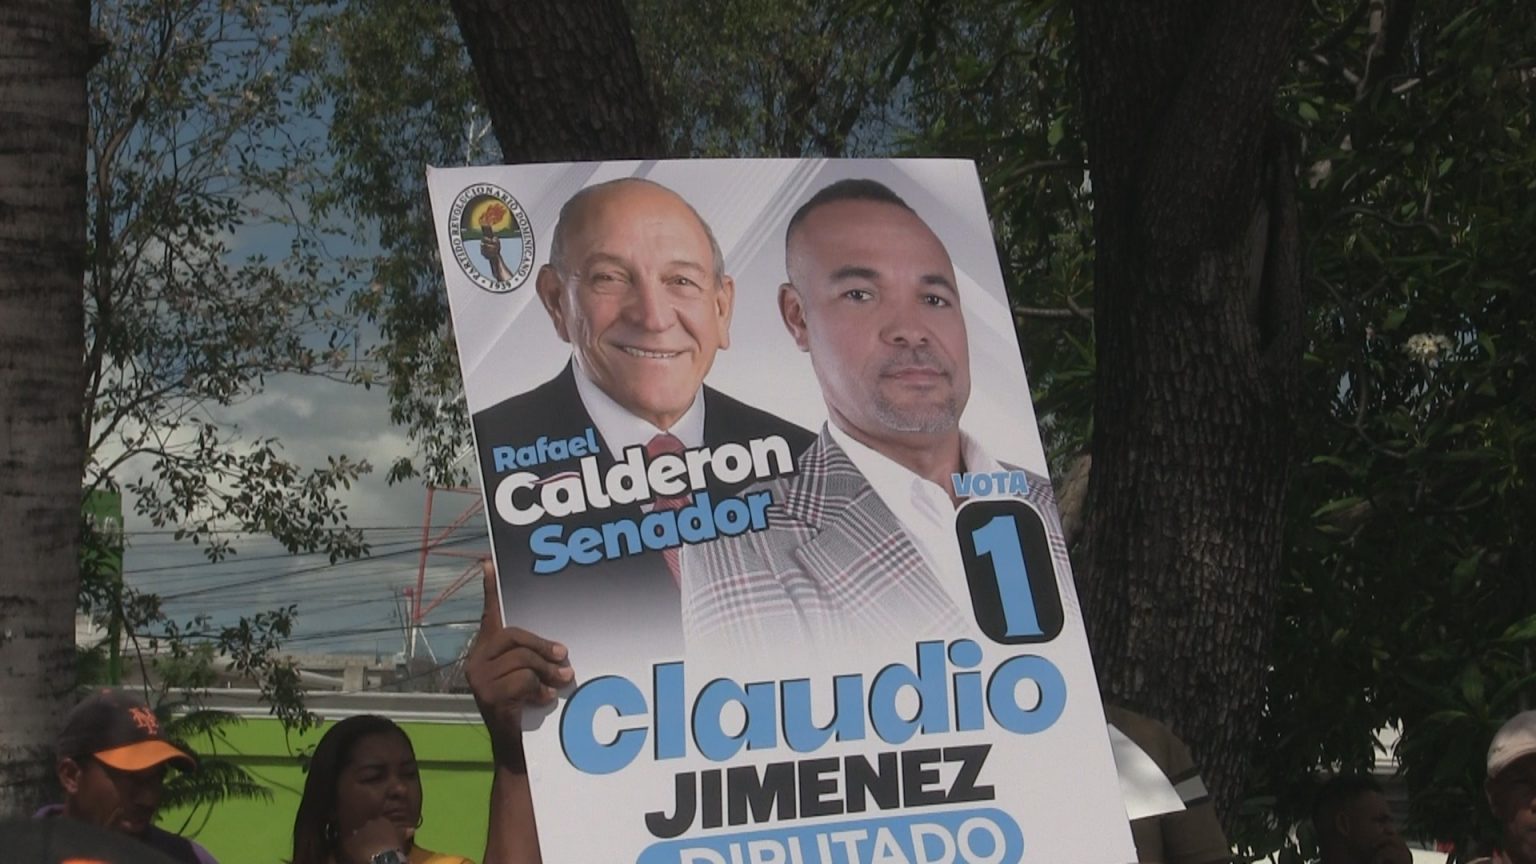 Alianza Rescate RD sale en defensa del candidato a senador Rafael Calderón